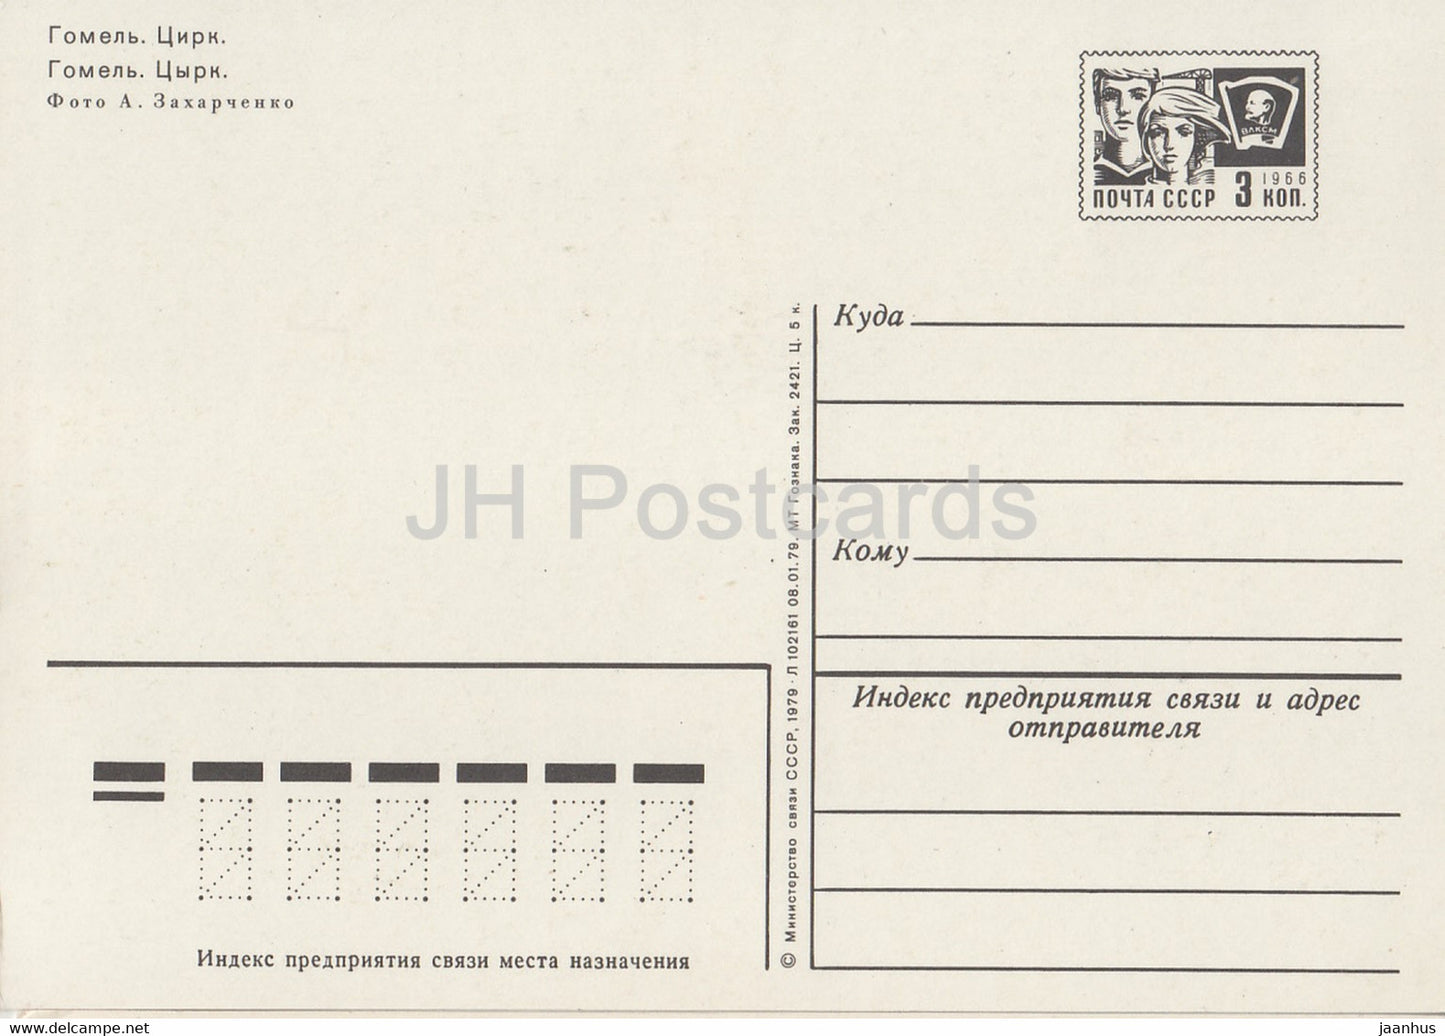 Gomel - circus - postal stationery - 1979 - Belarus USSR - unused